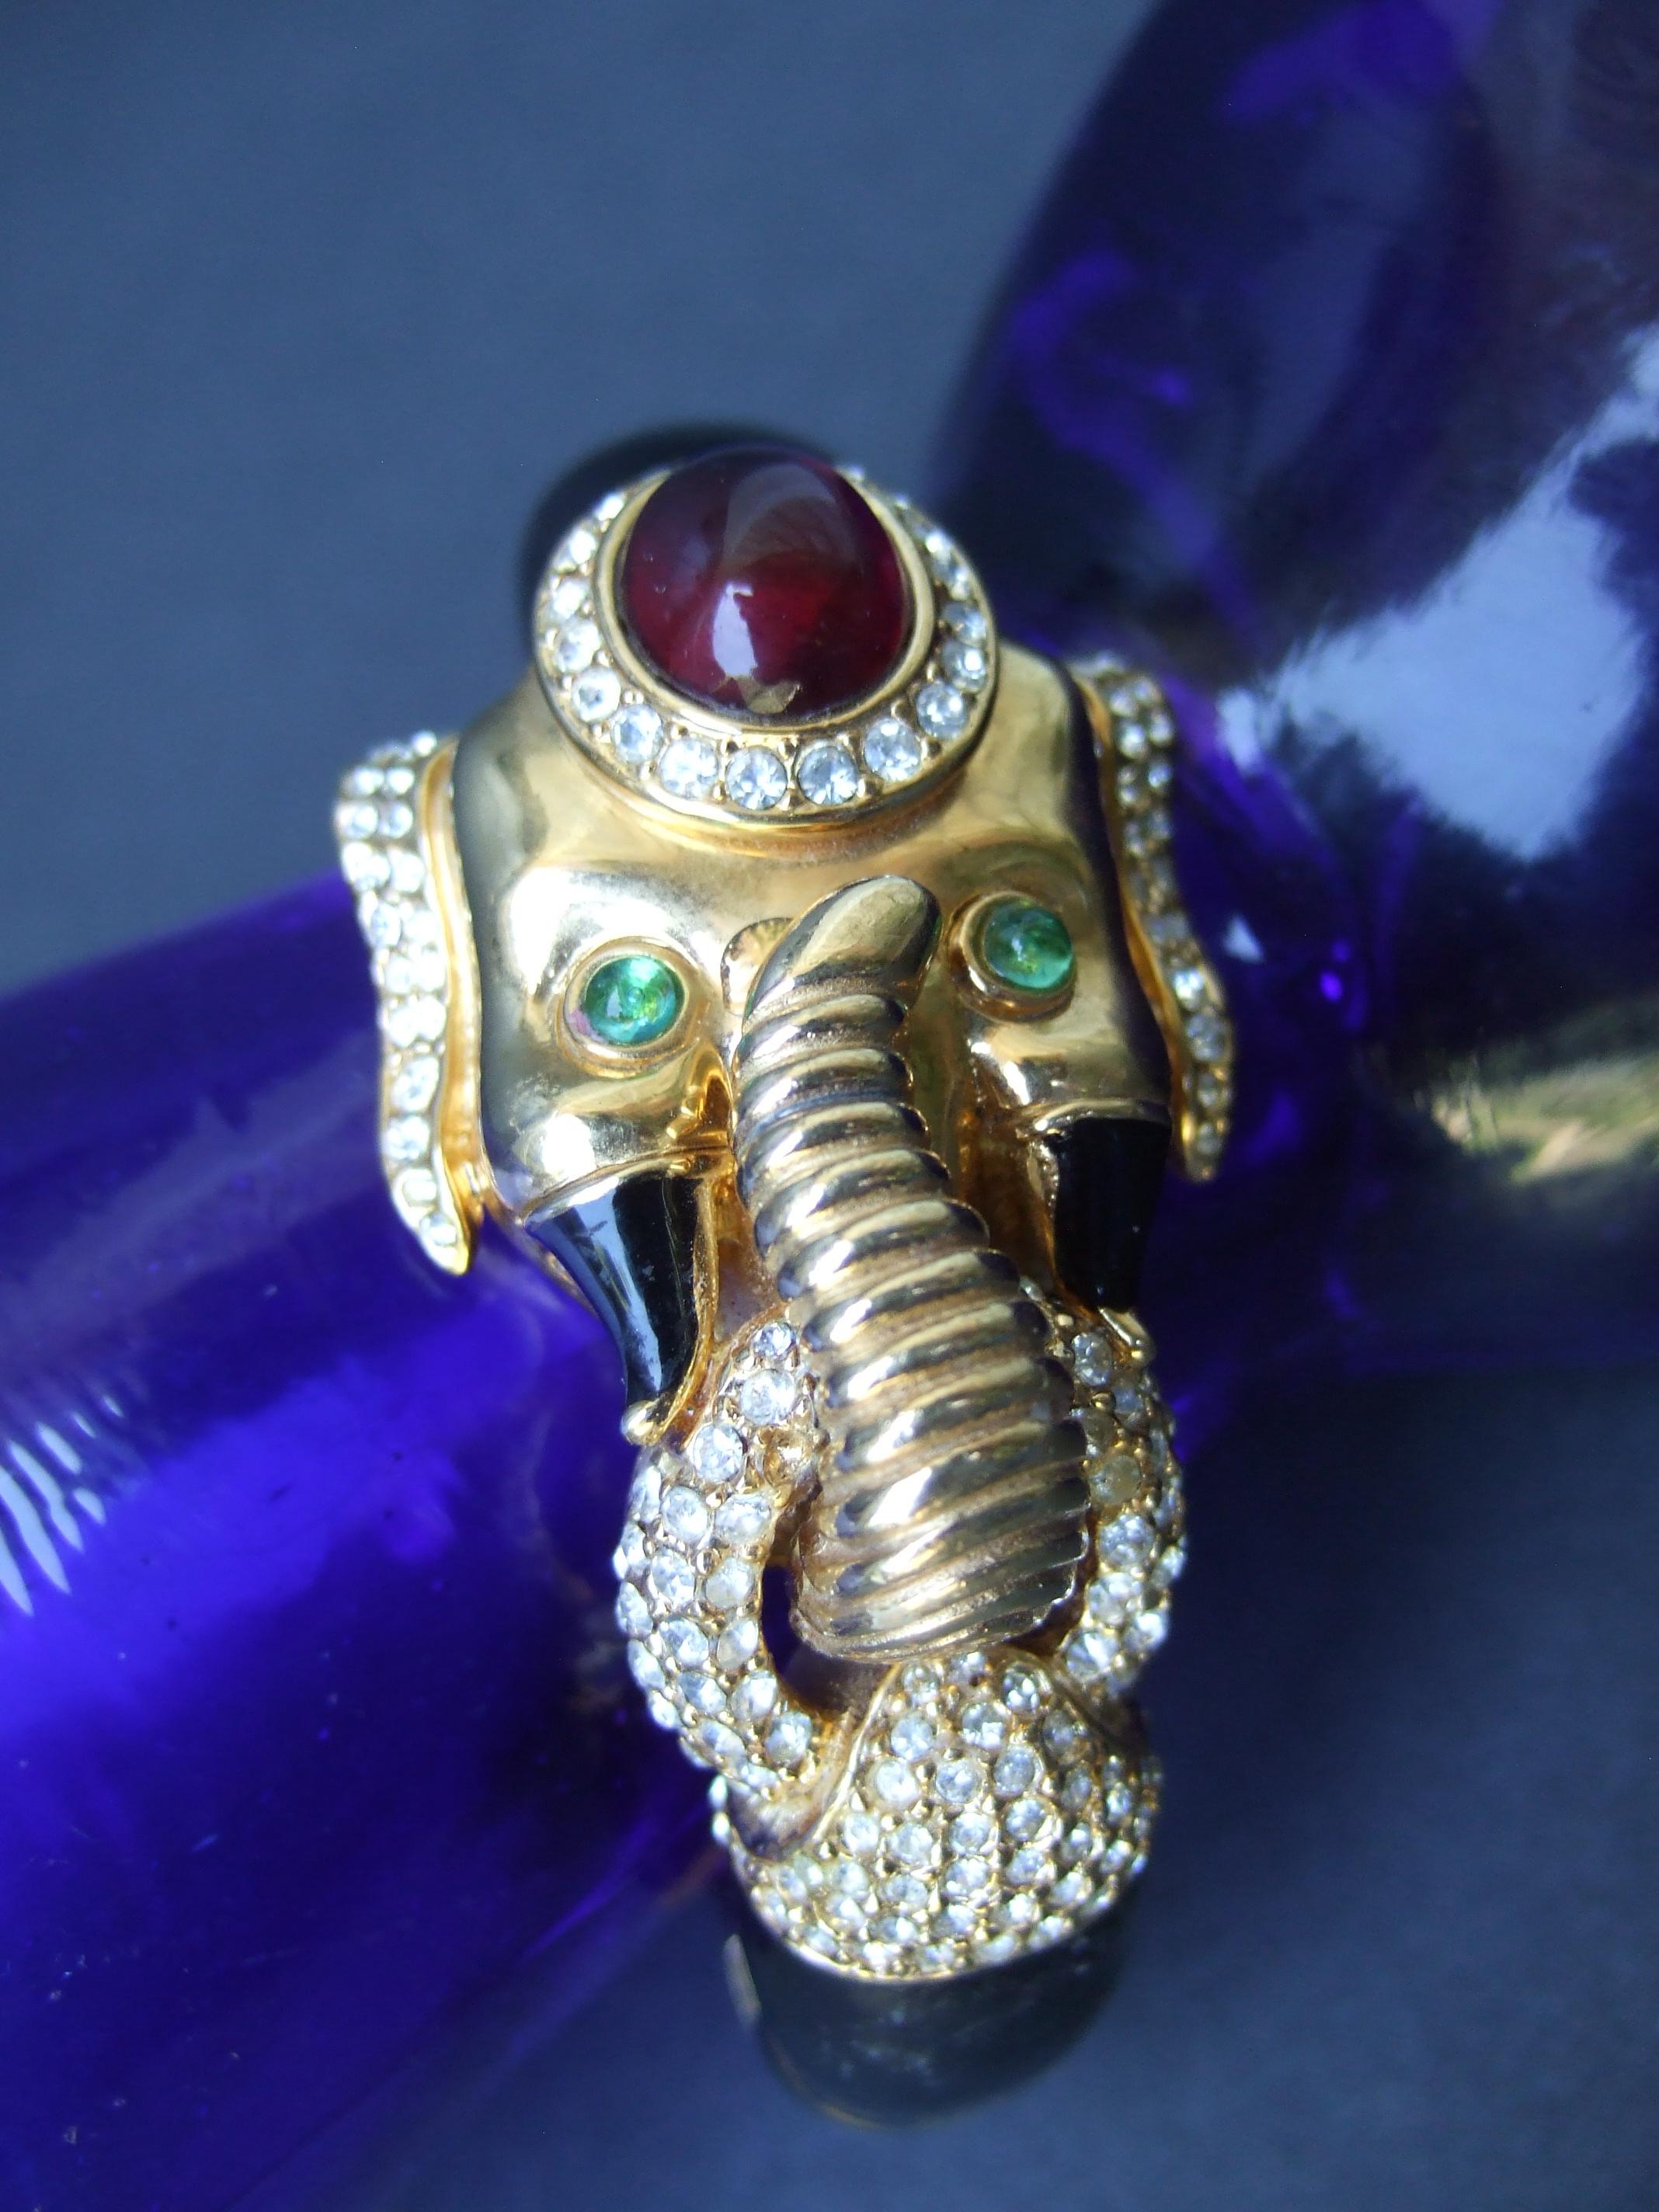 Bracelet éléphant à charnière en métal doré, émail noir et verre, datant des années 1970
Le bracelet opulent est conçu avec un éléphant exotique orné d'un rubis
cabochon en verre monté sur la tête

Accentué par des yeux en cristaux verts et des